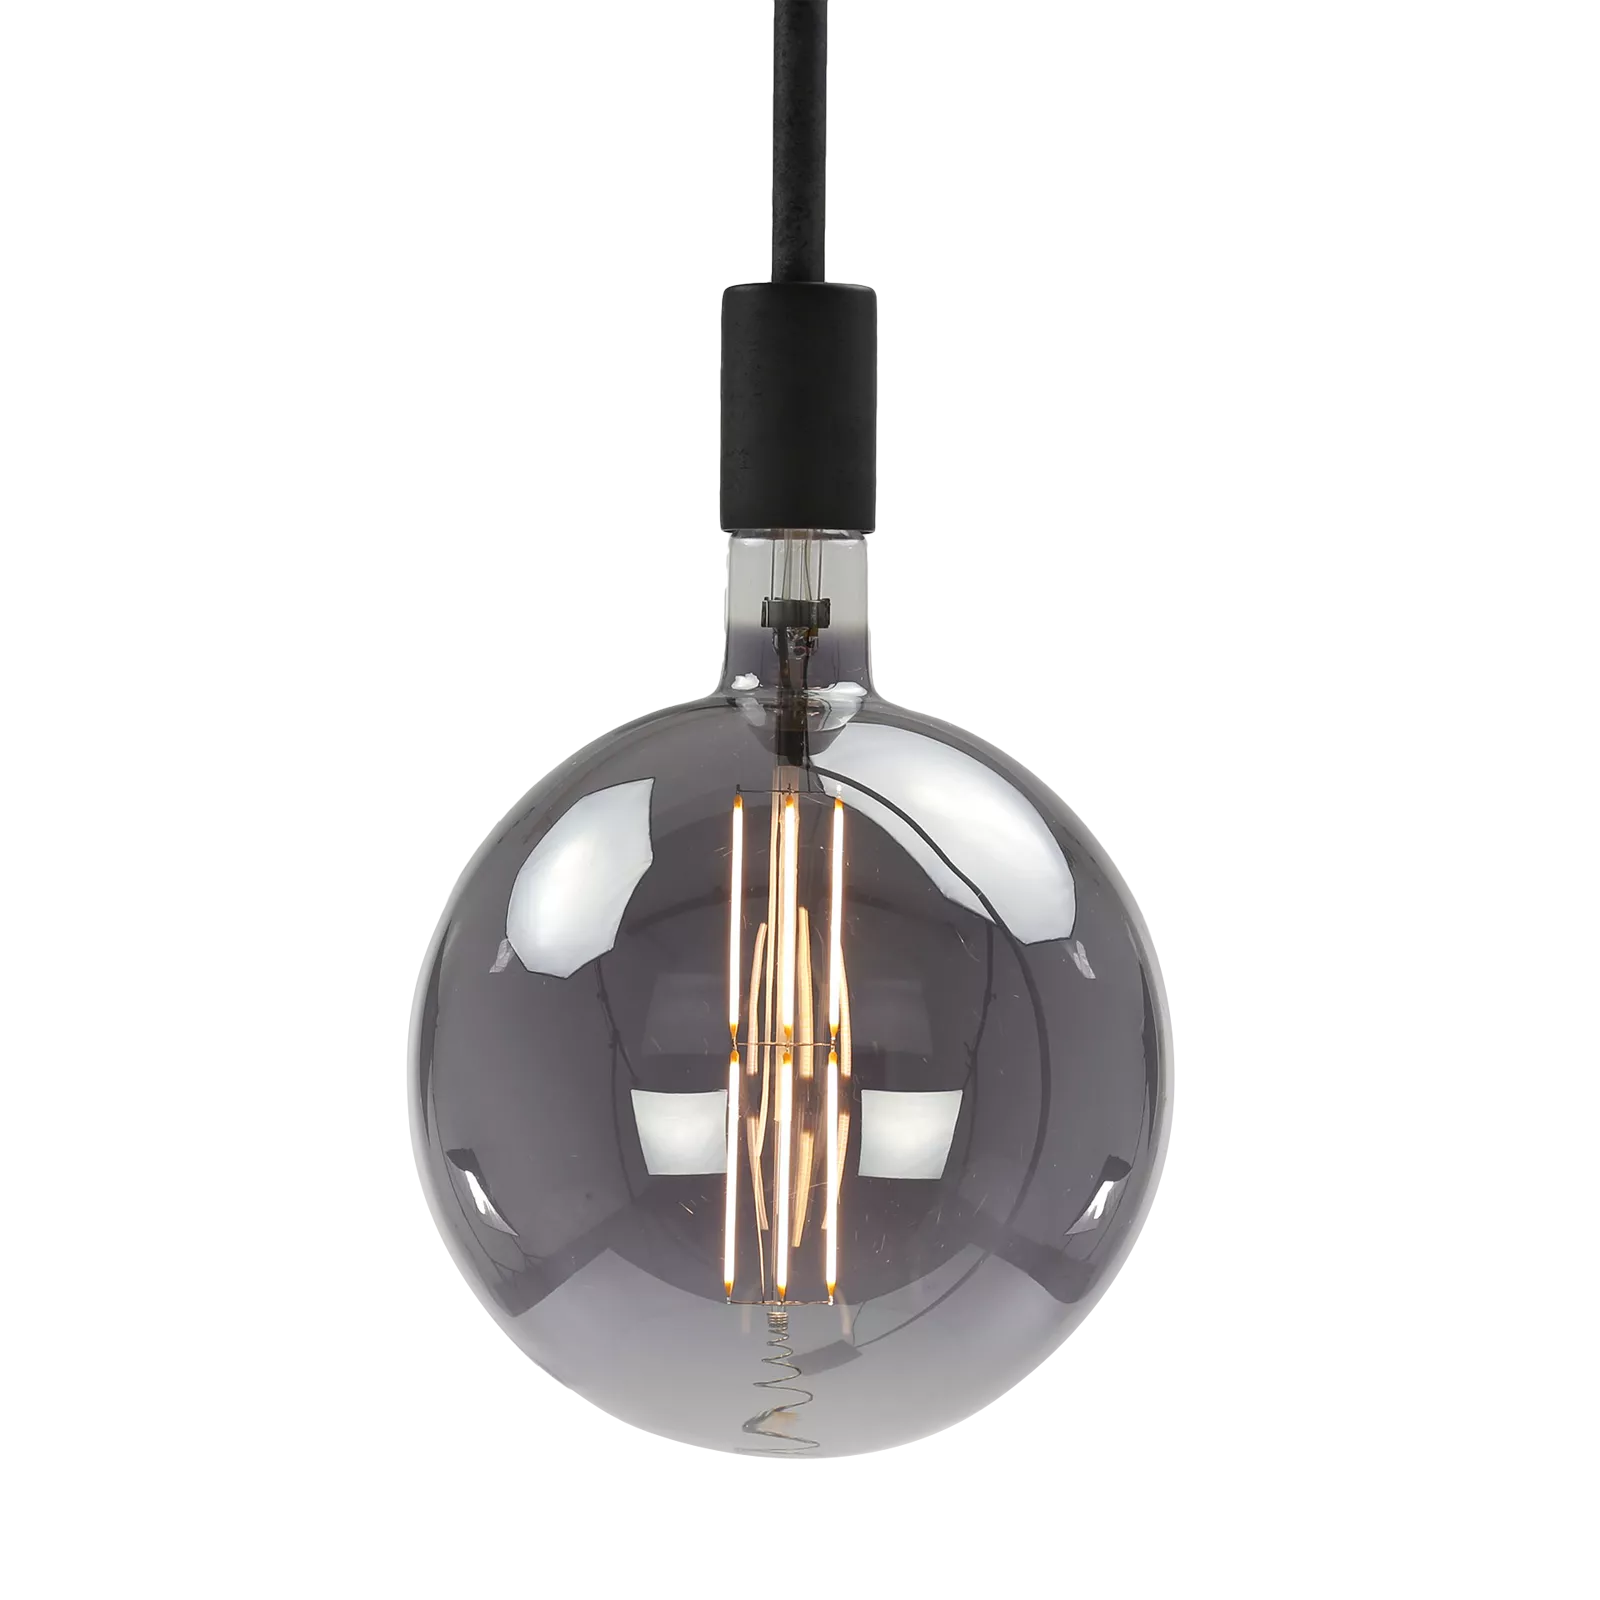 Lichtbron (20cm) LED Filament Bol - Smoke Grey